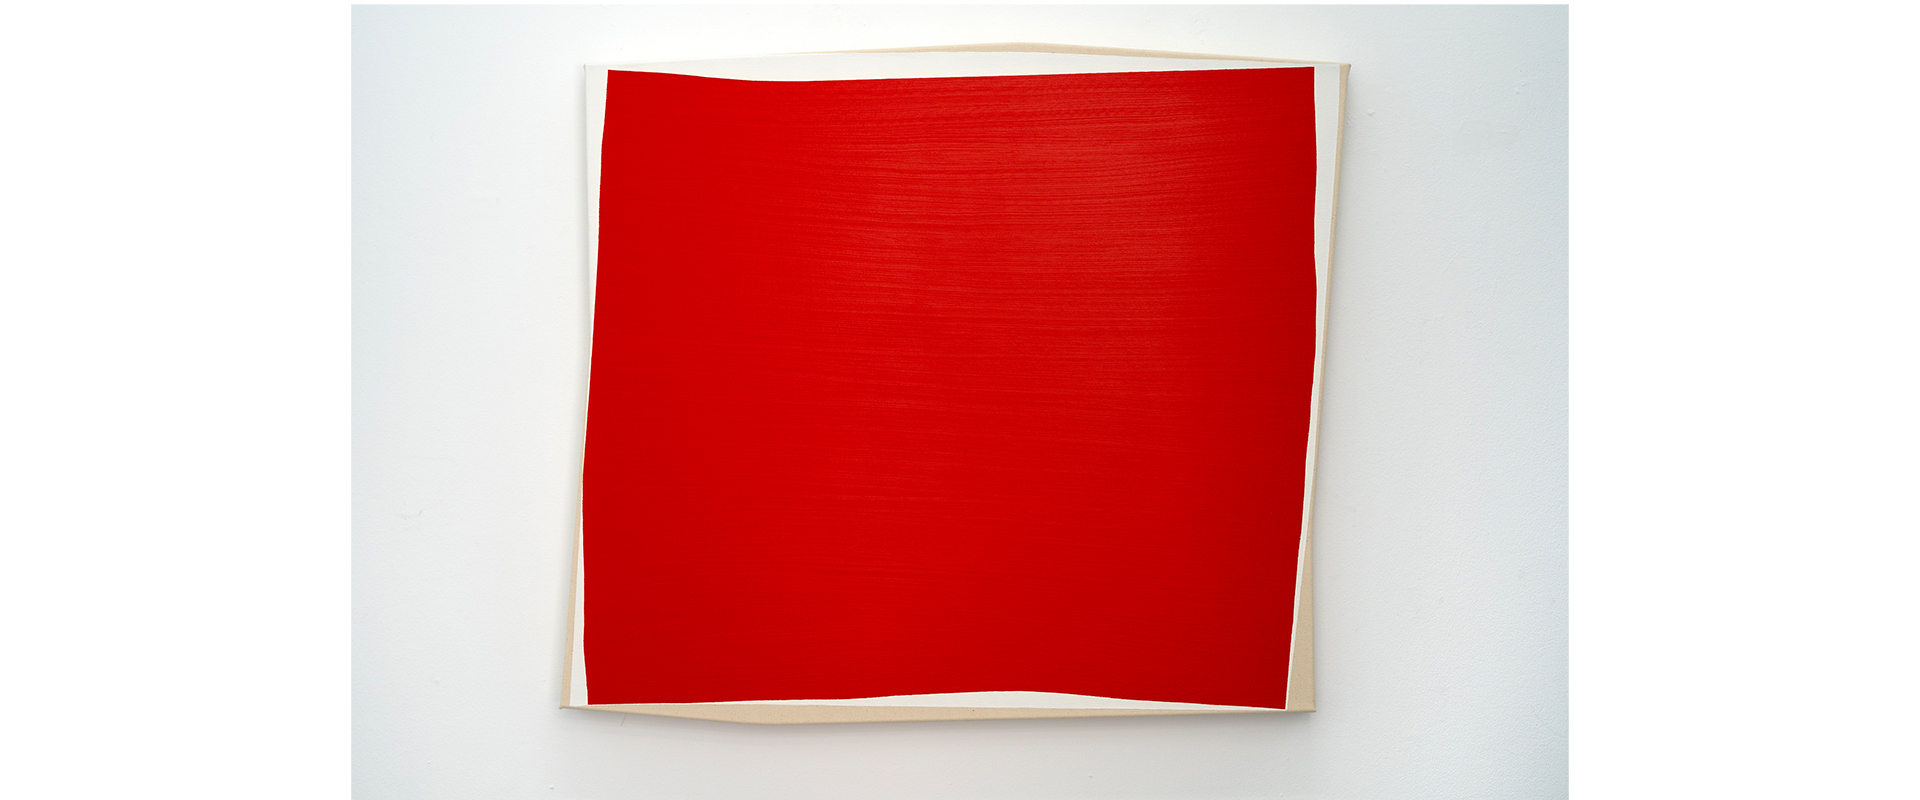 Marco Stanke, „Teil aus Kollektiv“ – 2022, Öl, Acryl, Nessel, 100 x 85 x 5 cm